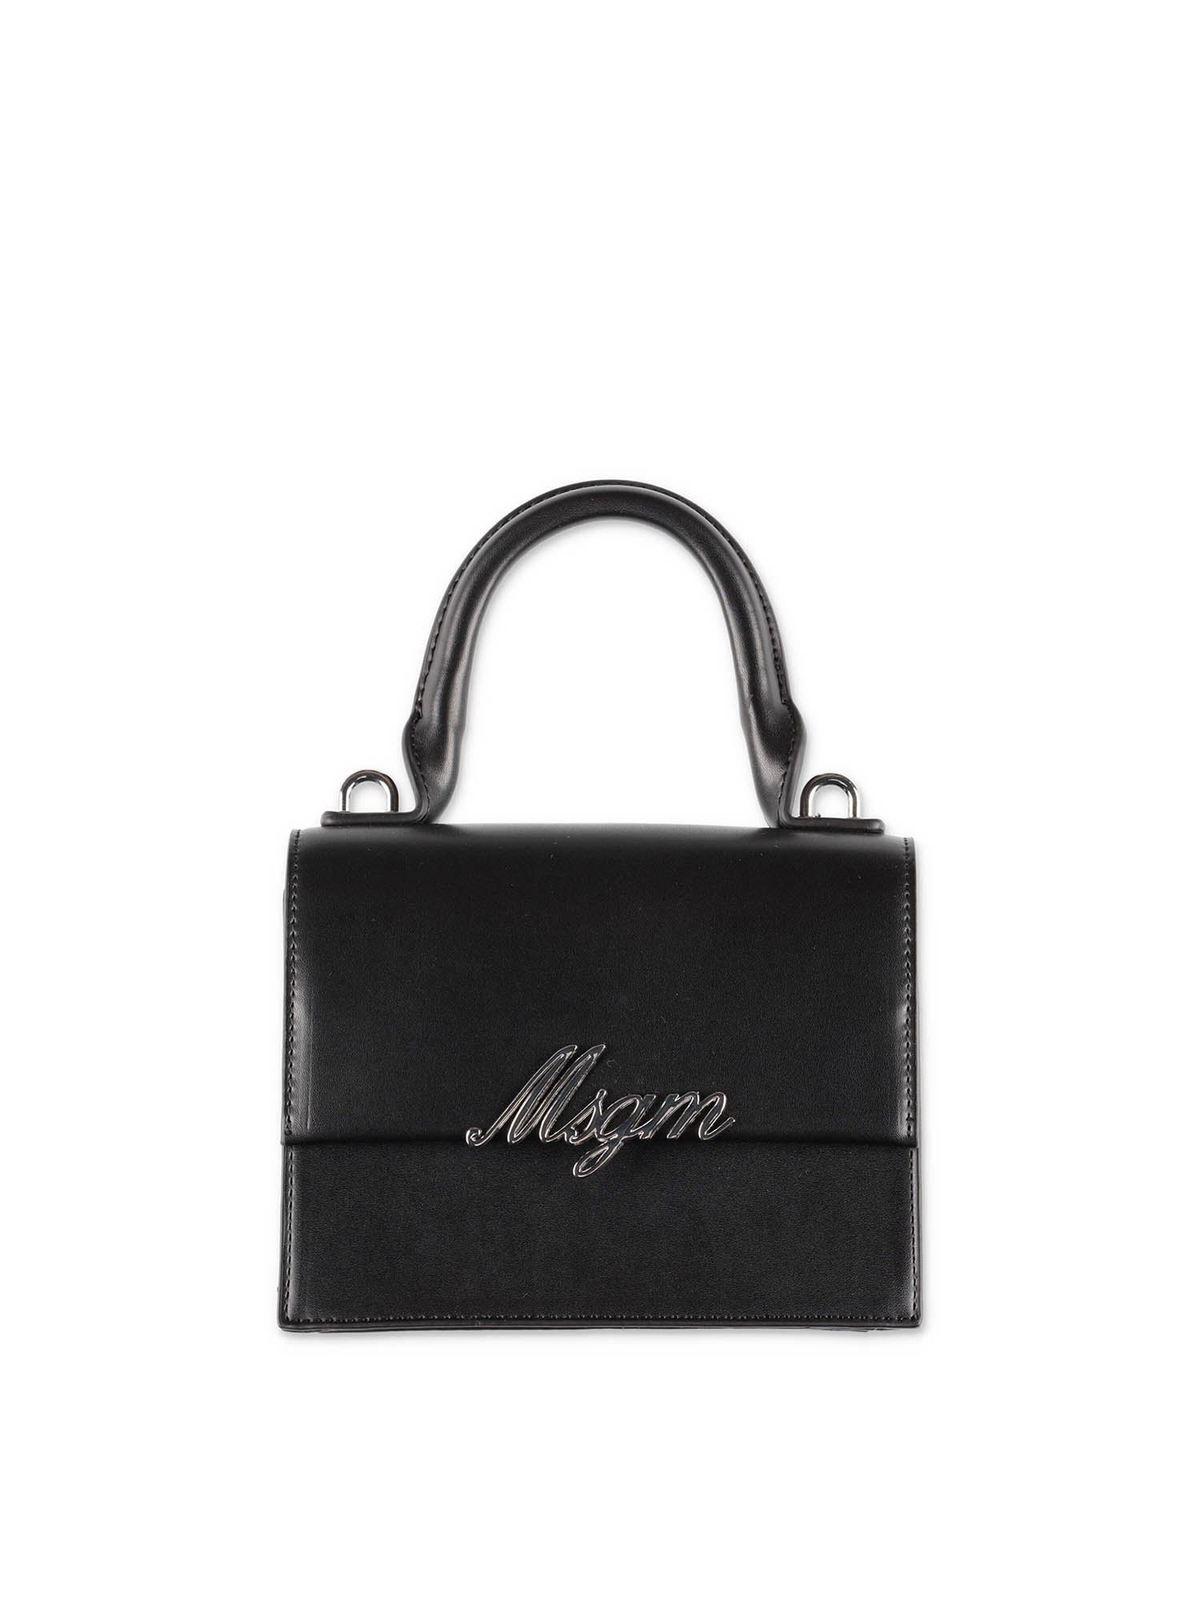 Msgm Kids' Logo Handbag In Black